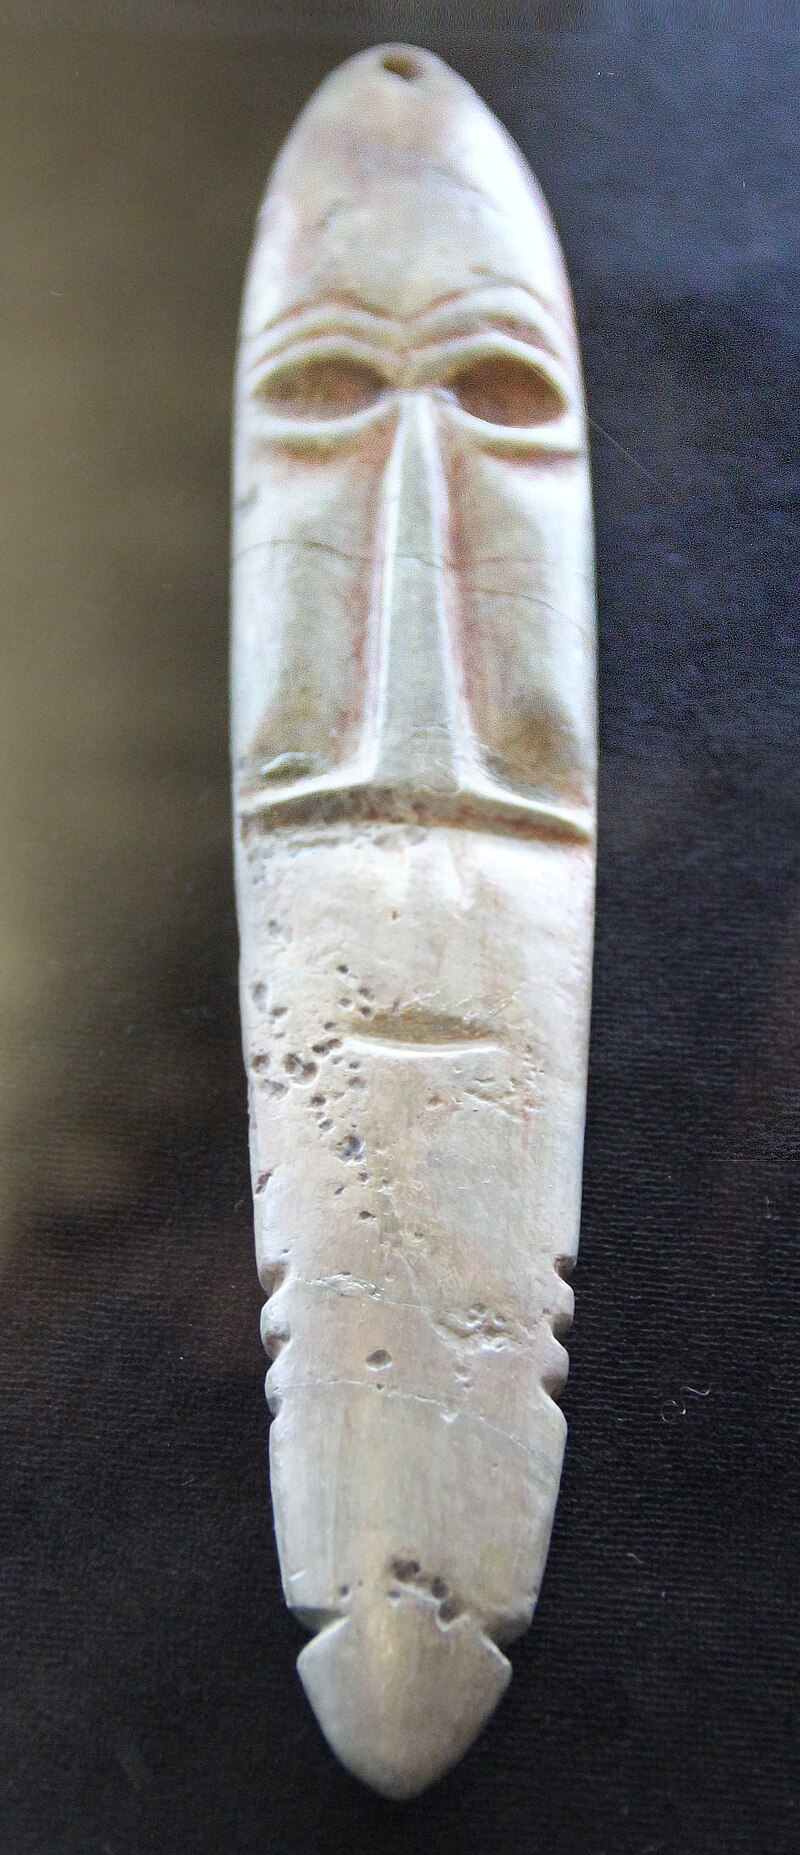 Neolithic_stone_amulet,_Dornod,_Mongolia,_4000-3000_BCE.jpg